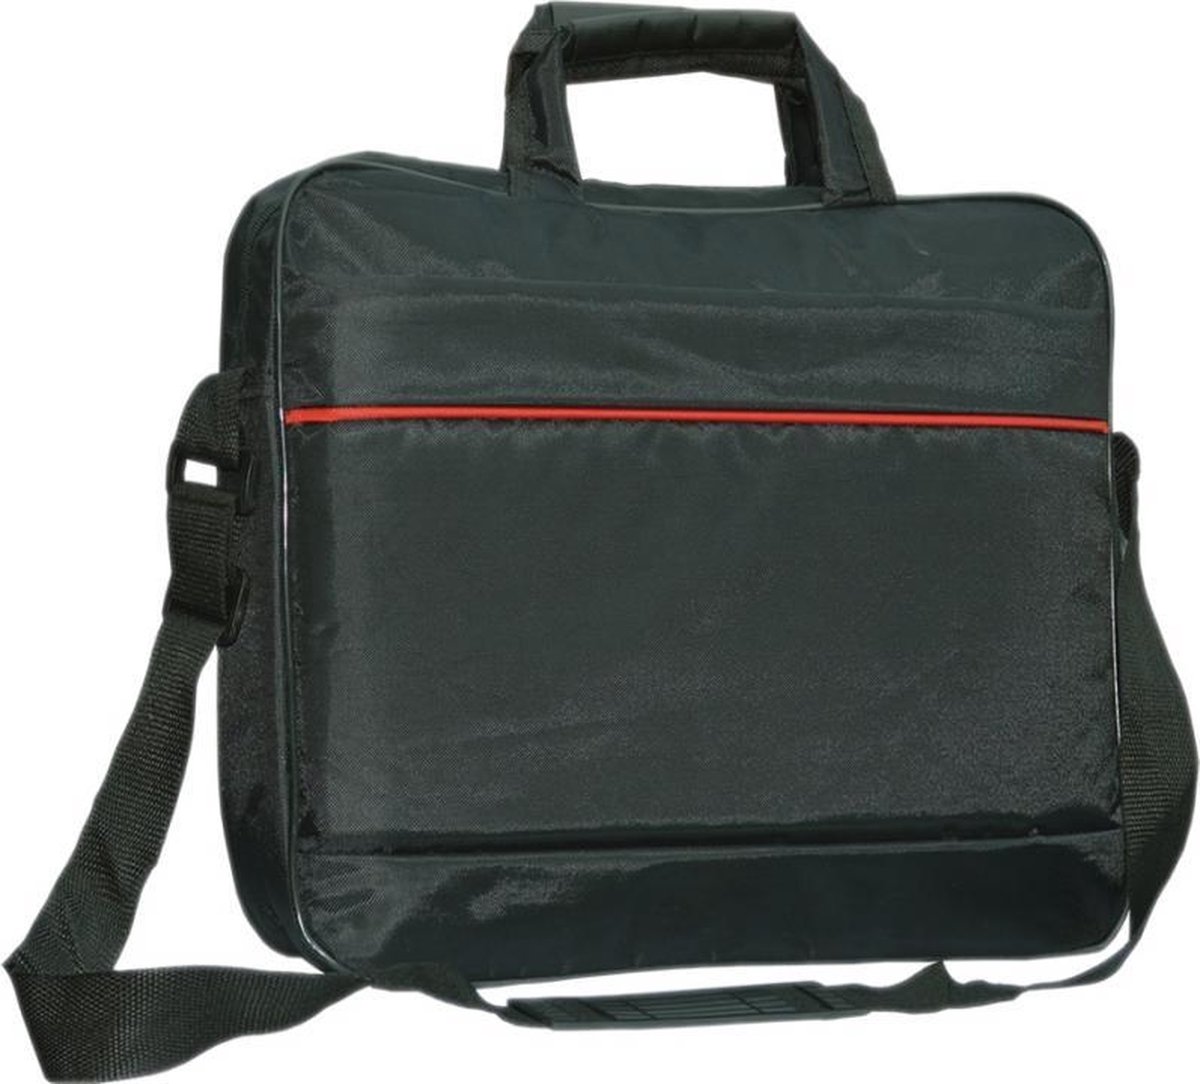 Hp Pavilion Chromebook laptoptas messenger bag / schoudertas / tas , zwart , merk i12Cover